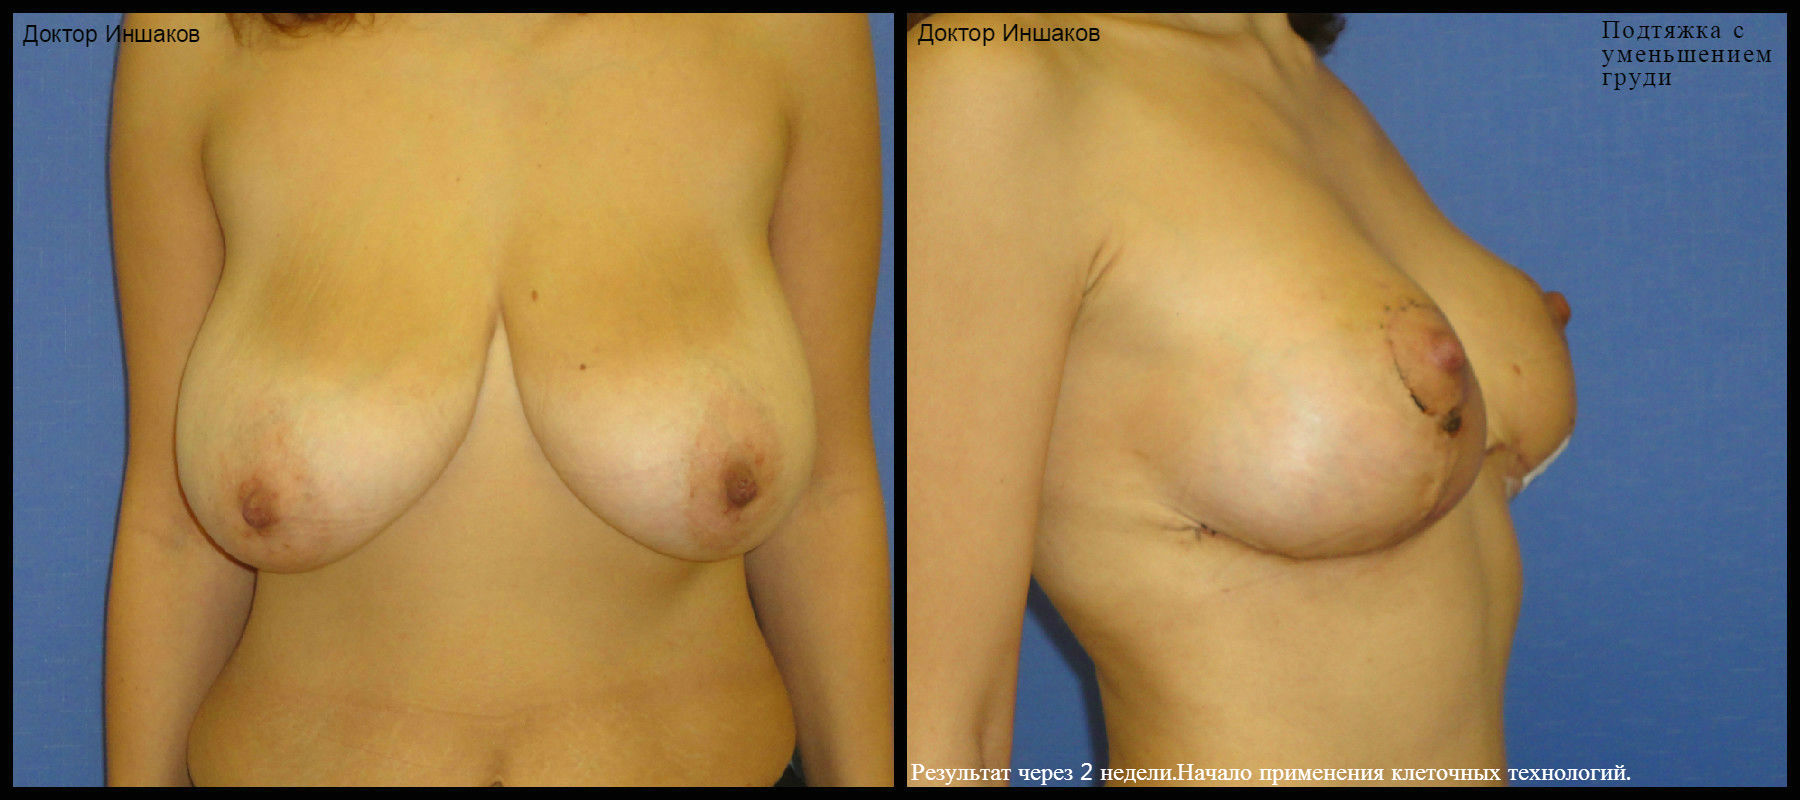 уменьшение размера груди операцией фото 30